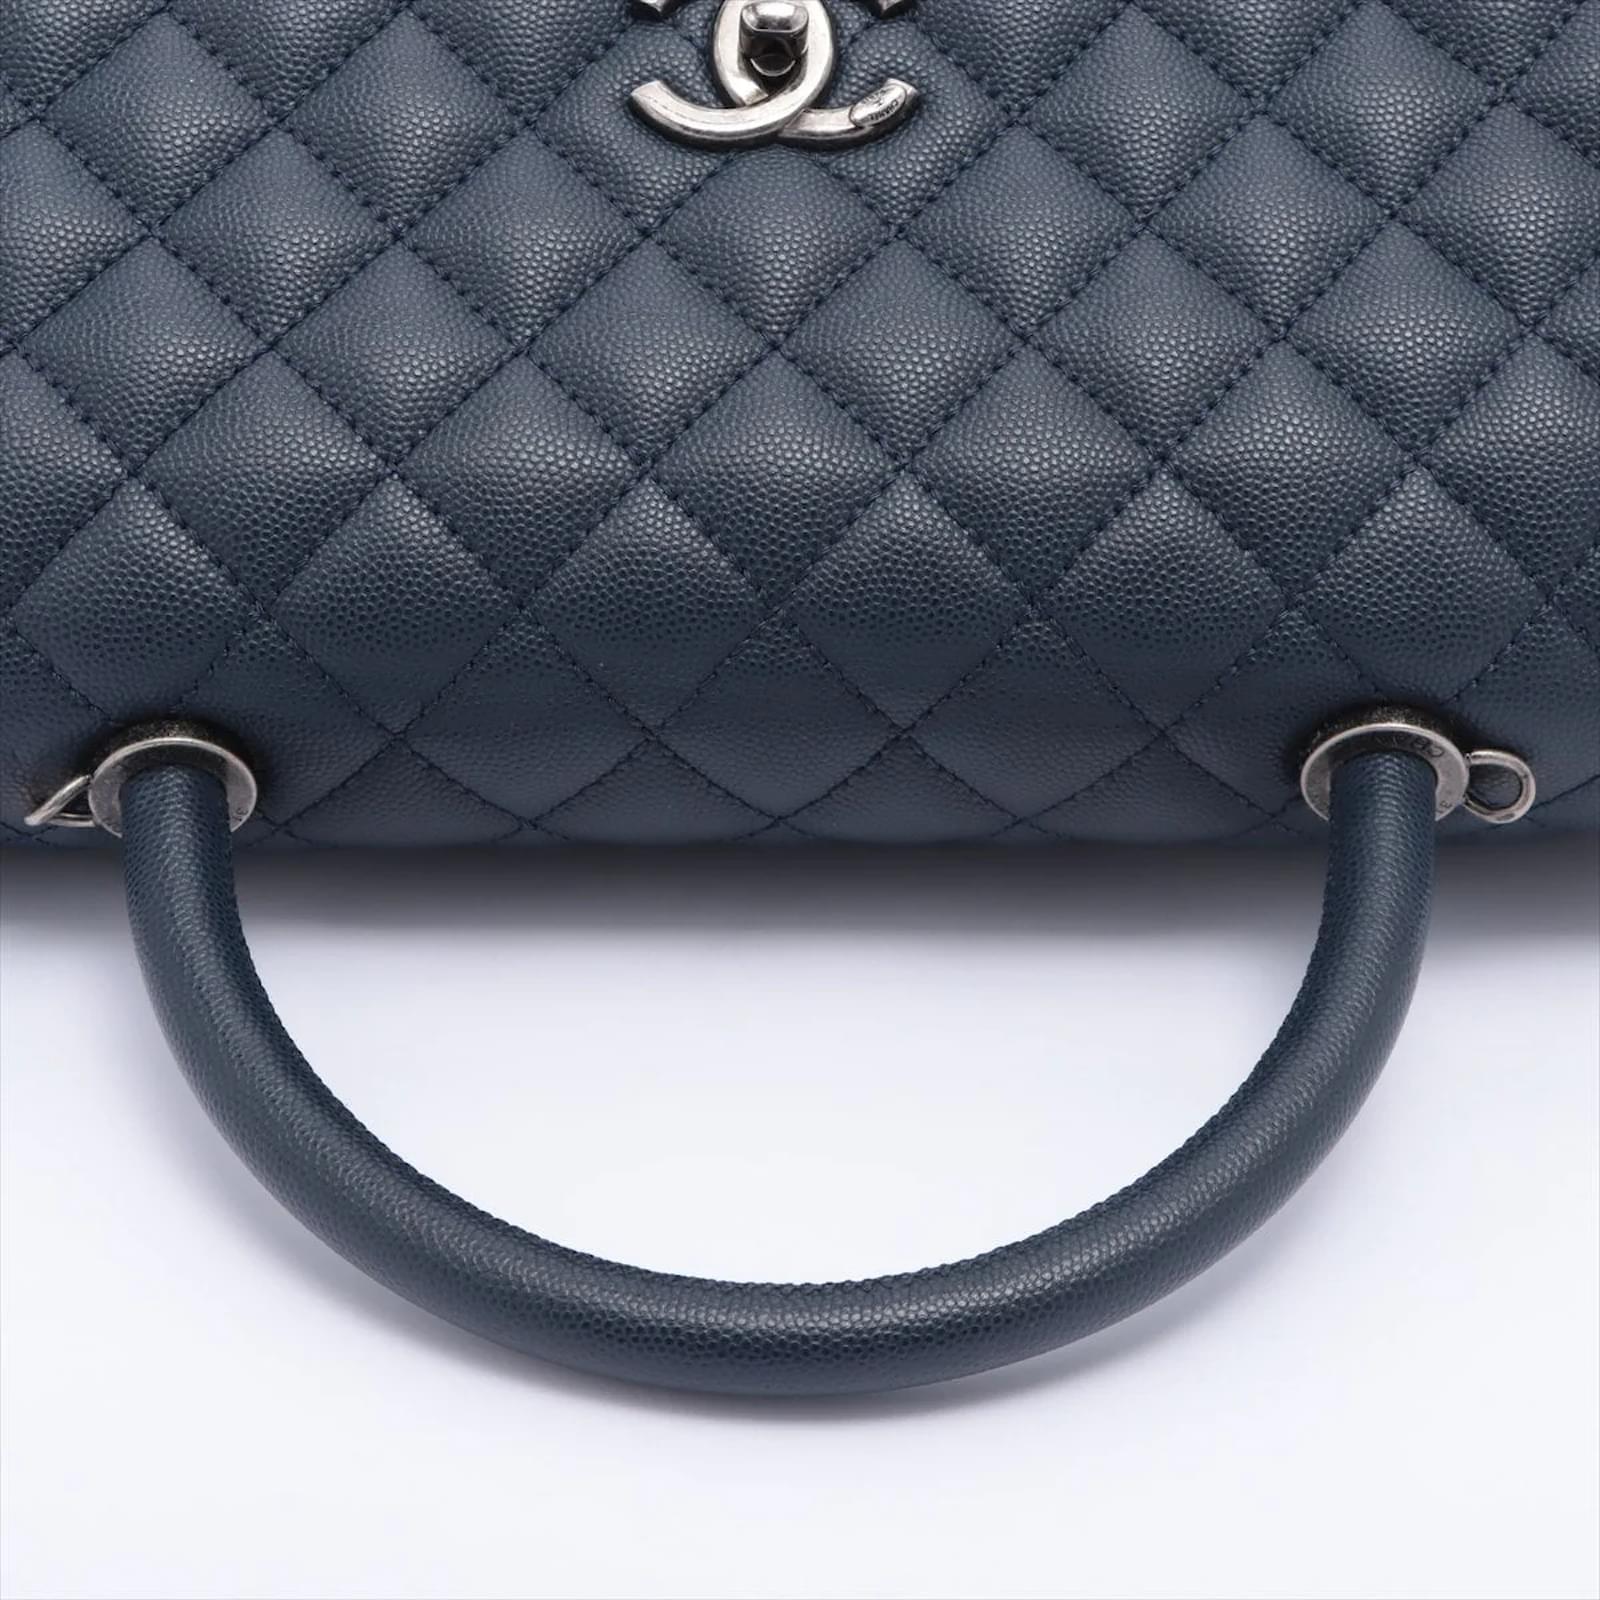 Handbags Chanel Coco Handle Large Caviar 2way Navy Blue Ruthenium